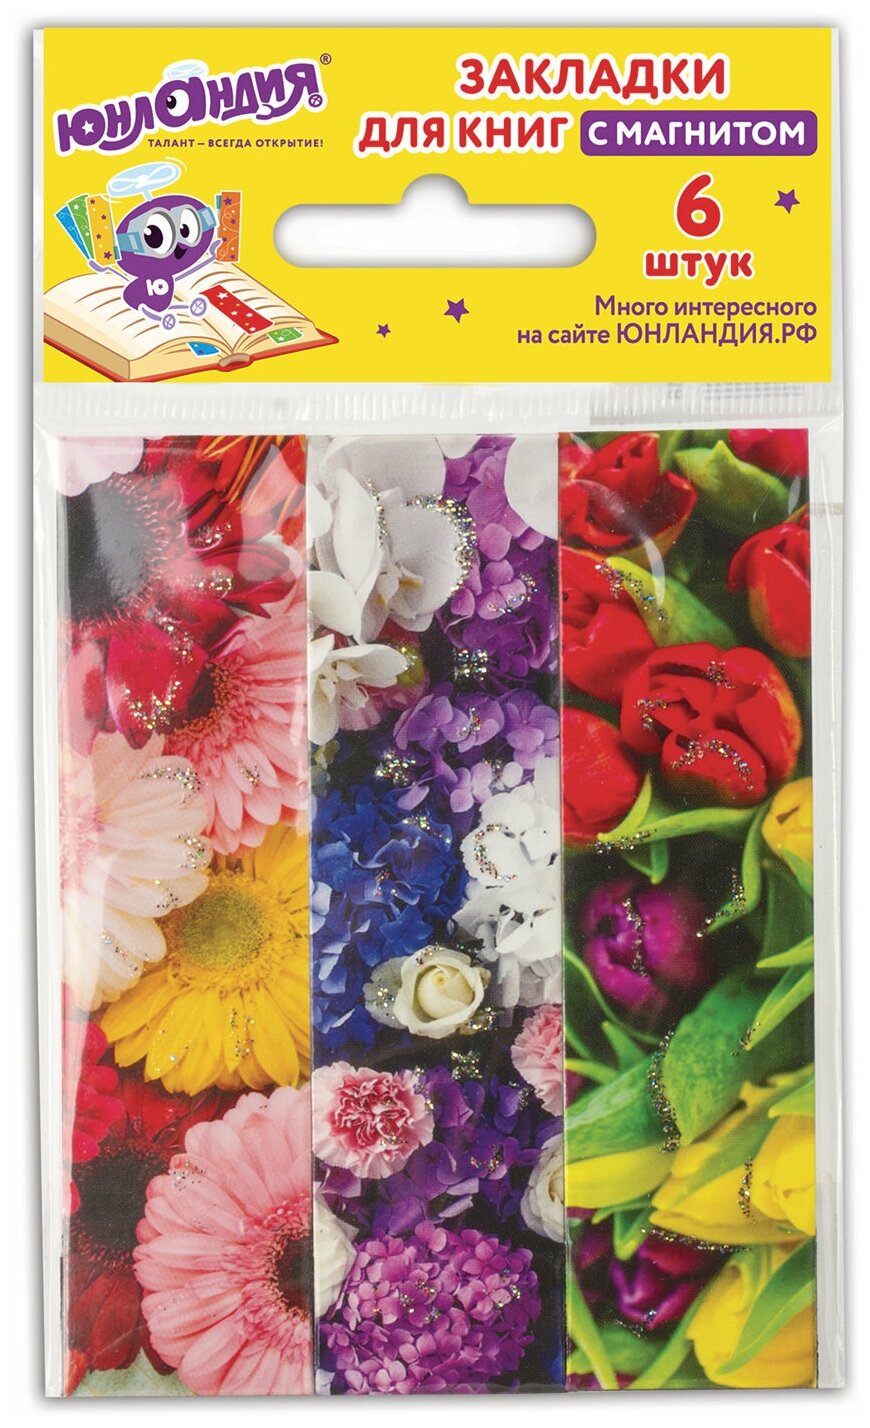 Закладки для книг с магнитом цветы, набор 6 шт, блестки, 25x196 мм, юнландия, 129618